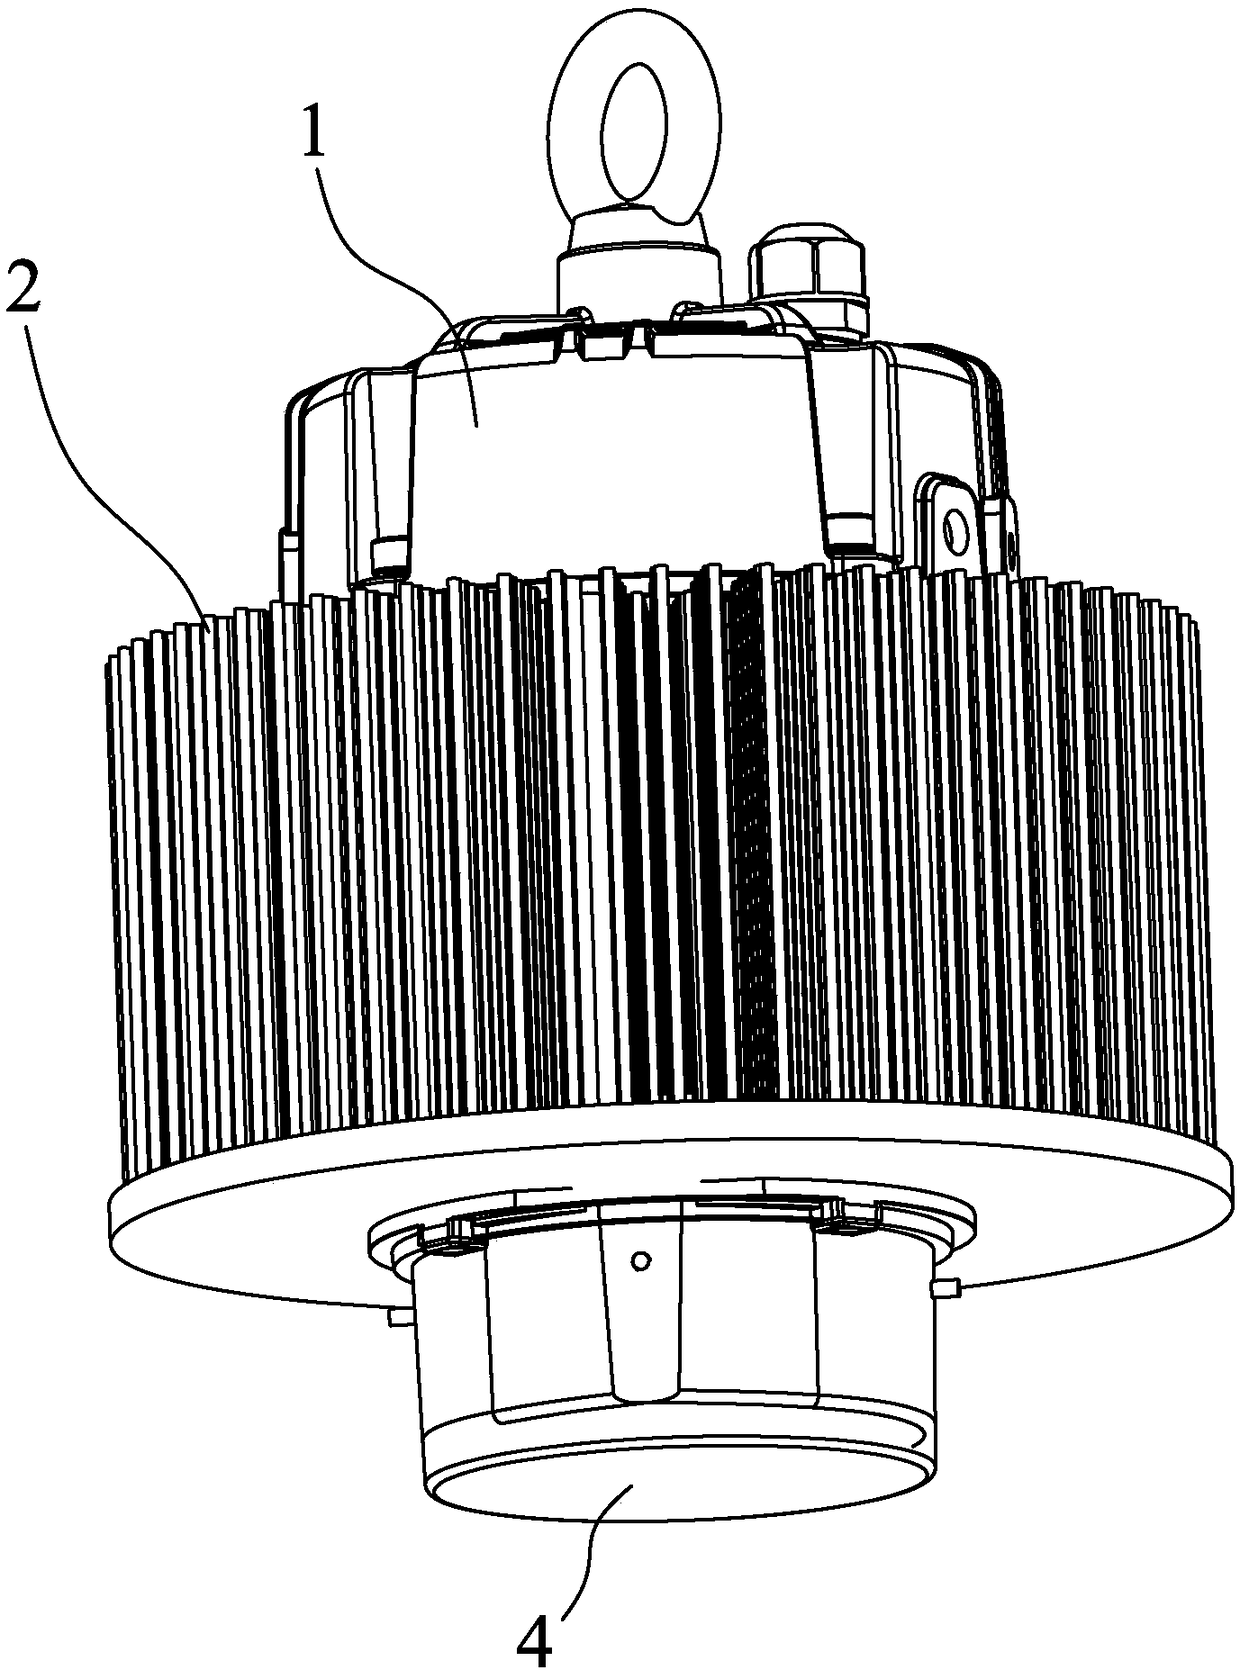 An LED light emitting device for increasing luminous flux density